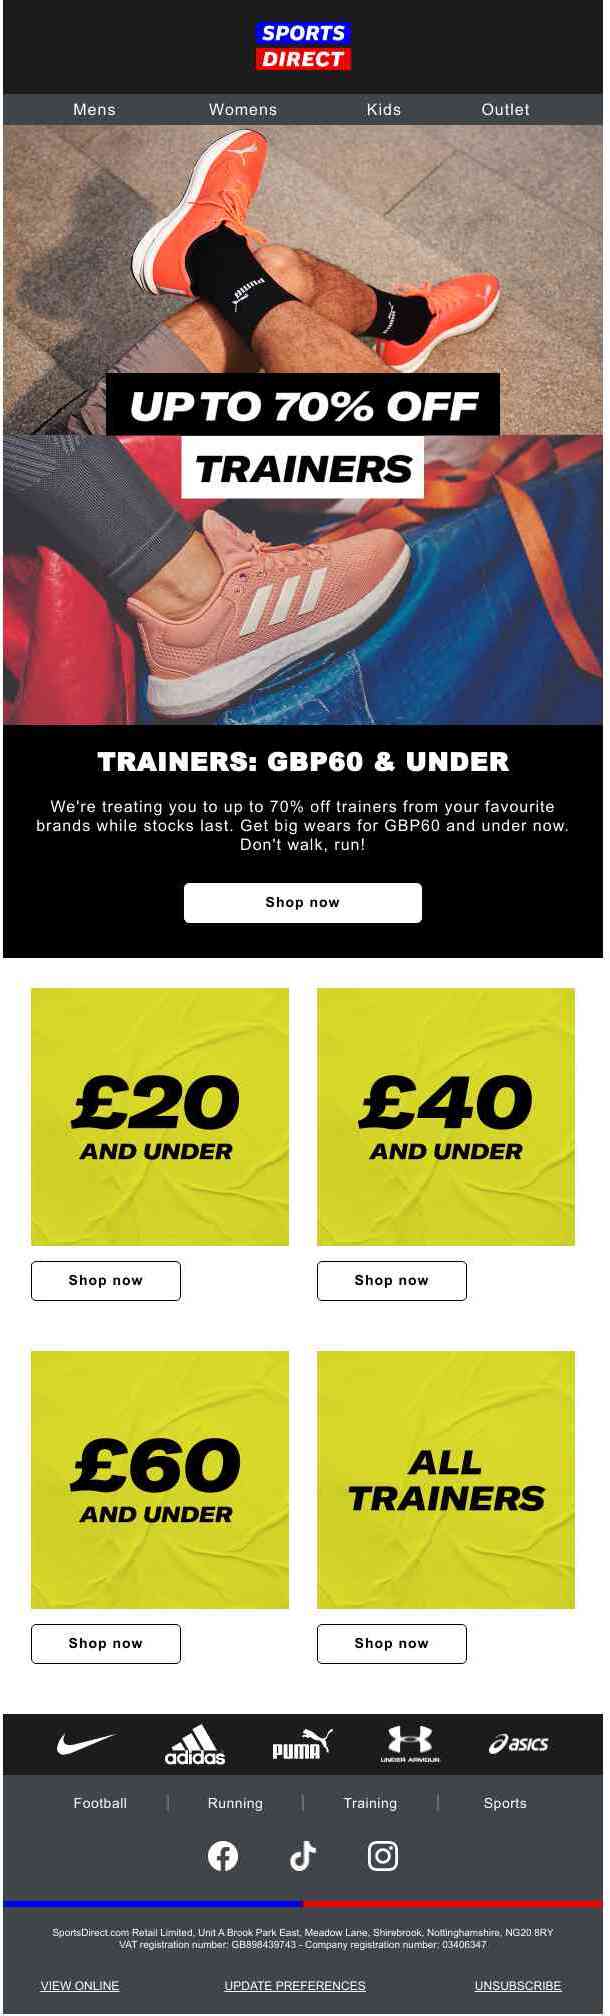 🚨 ALERT: Trainers under £60 🚨